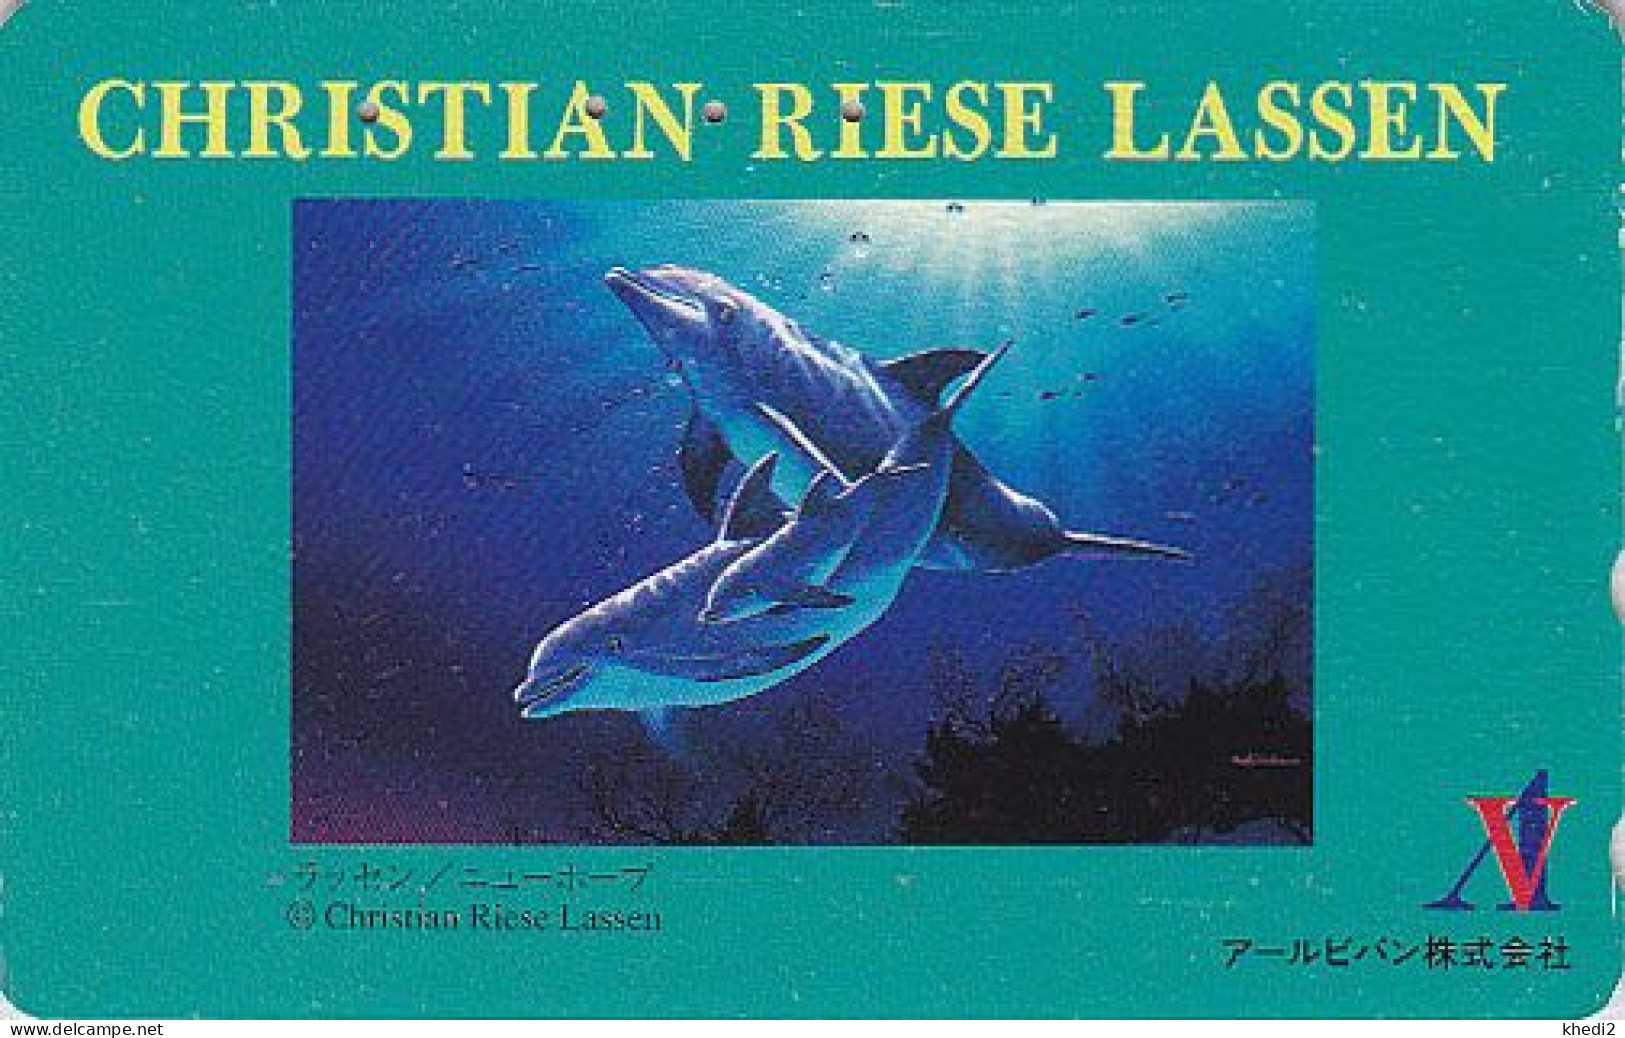 TC JAPON / 110-011 - Série Peinture CHRISTIAN RIESE LASSEN - ANIMAL DAUPHIN érotique - EROTIC DOLPHIN JAPAN Pc 02 - Dauphins